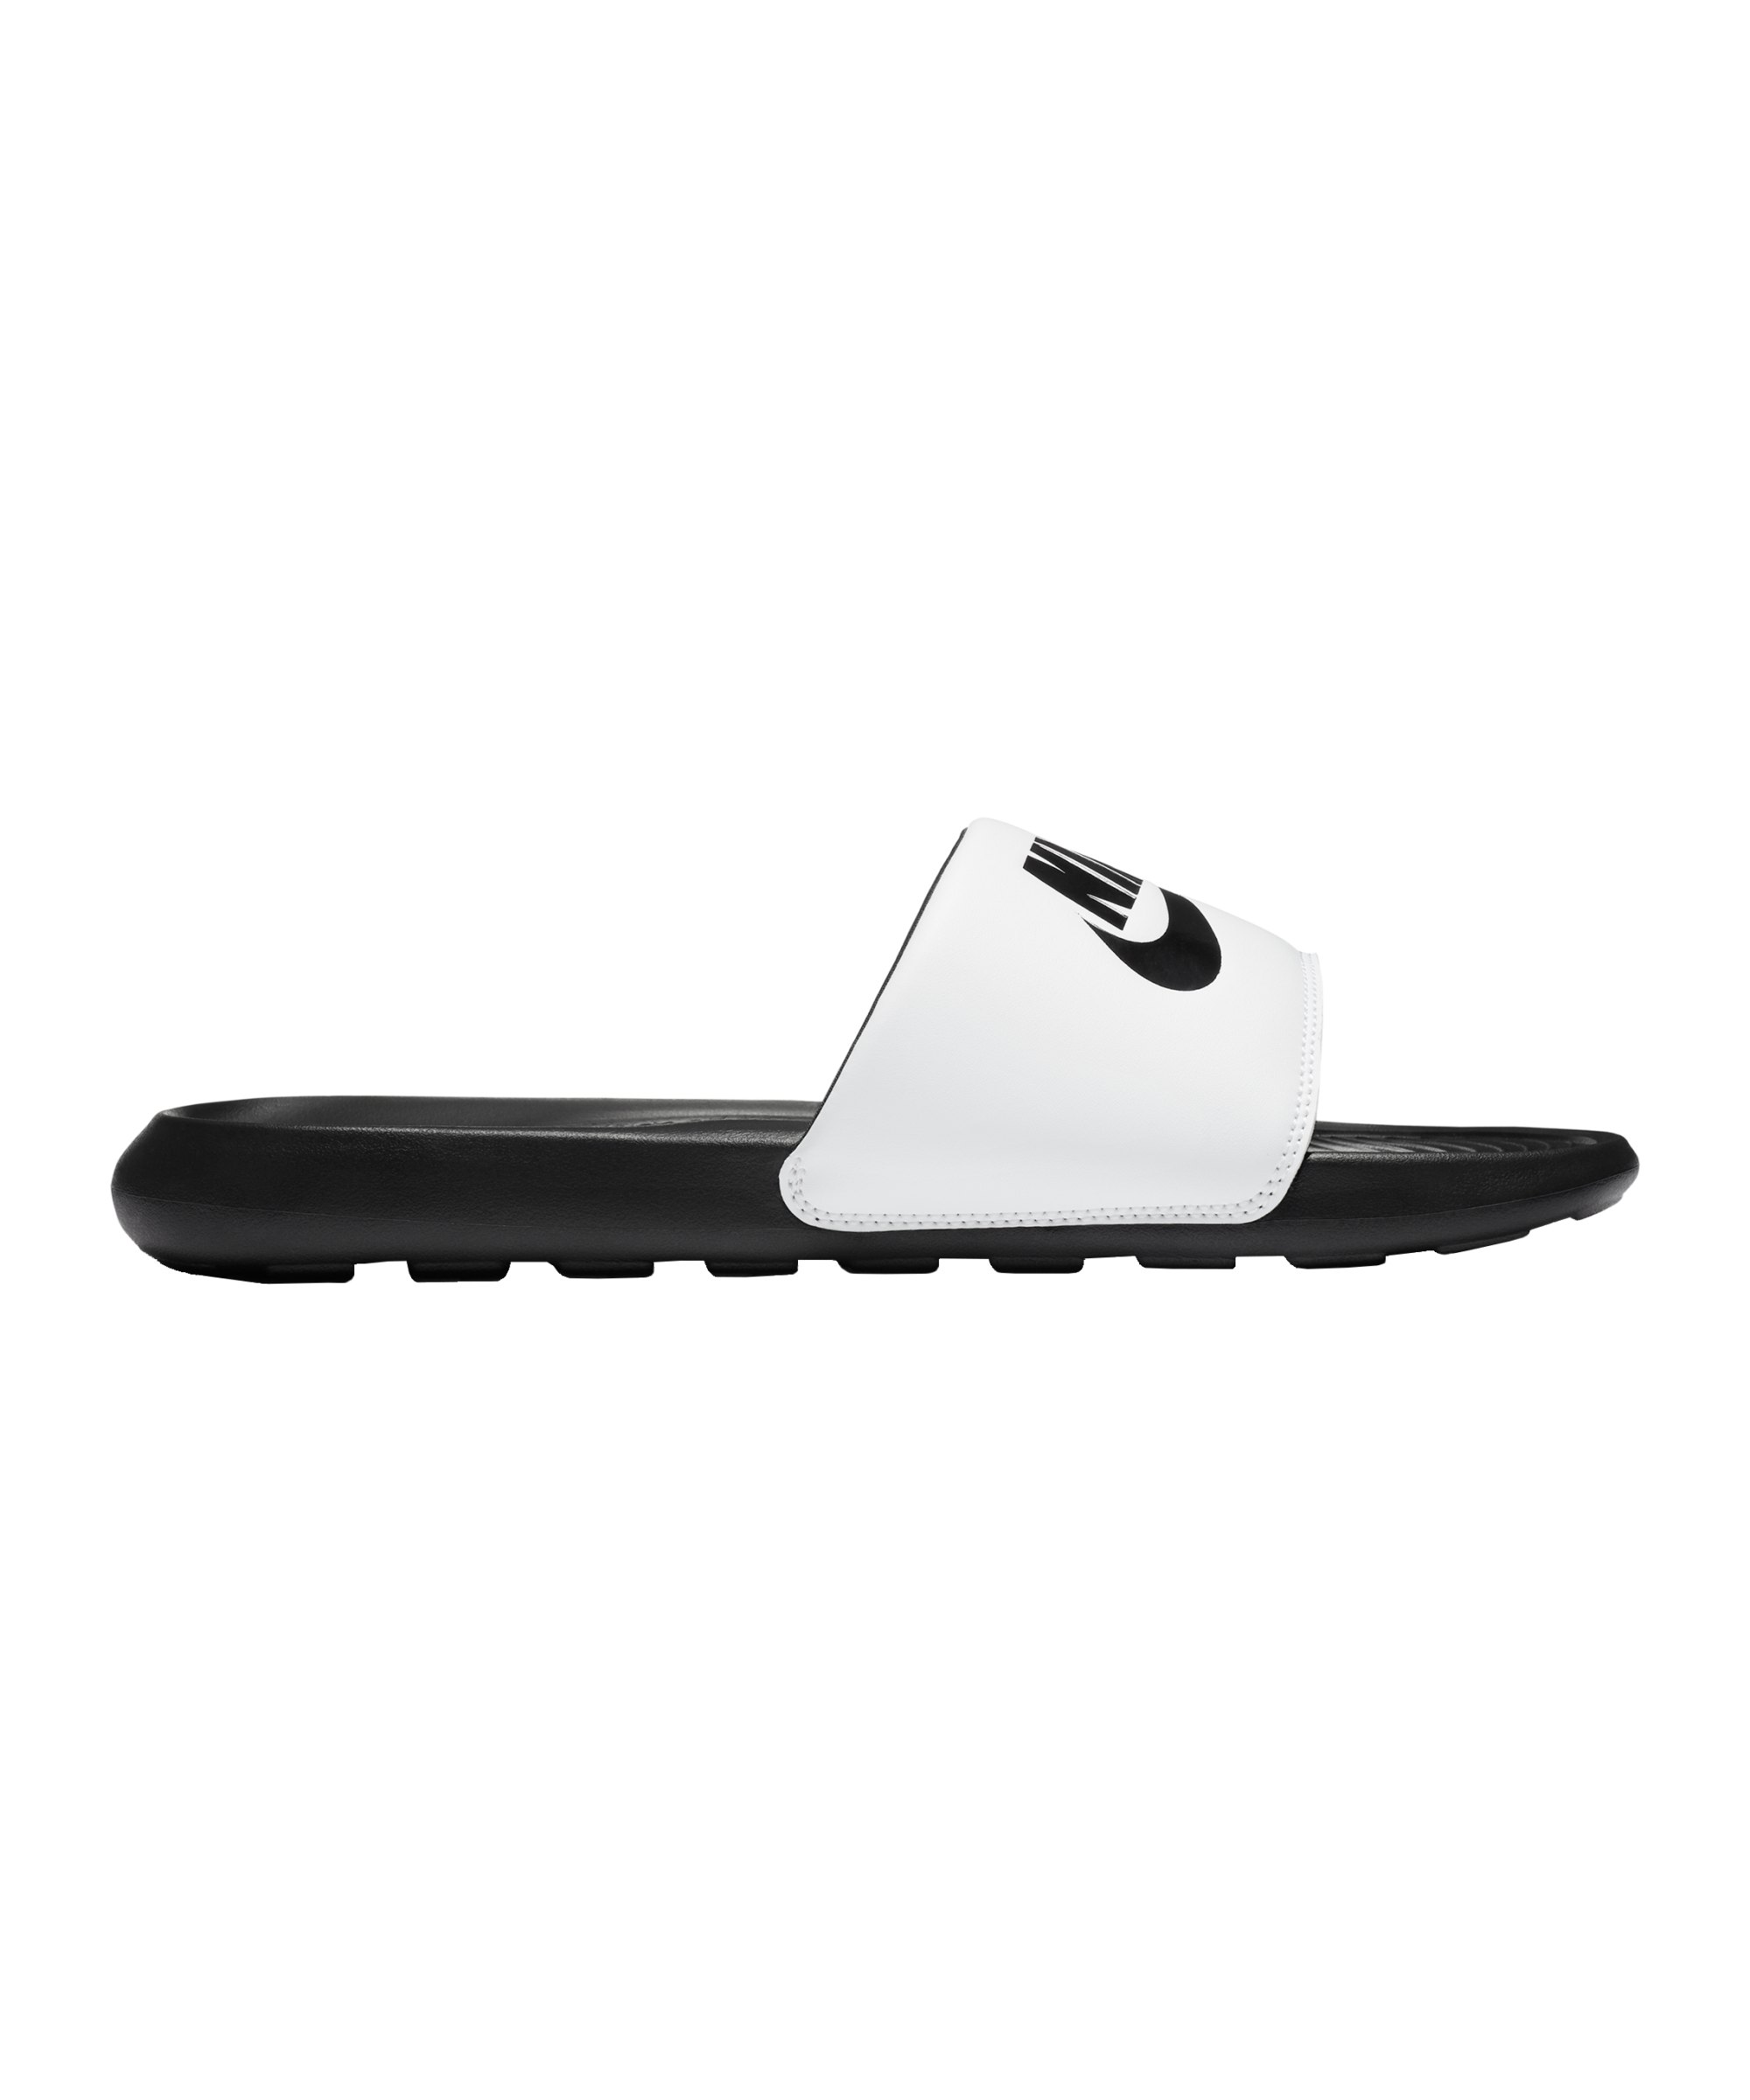 Nike Victori One Slide Badelatsche Schwarz F005 - schwarz